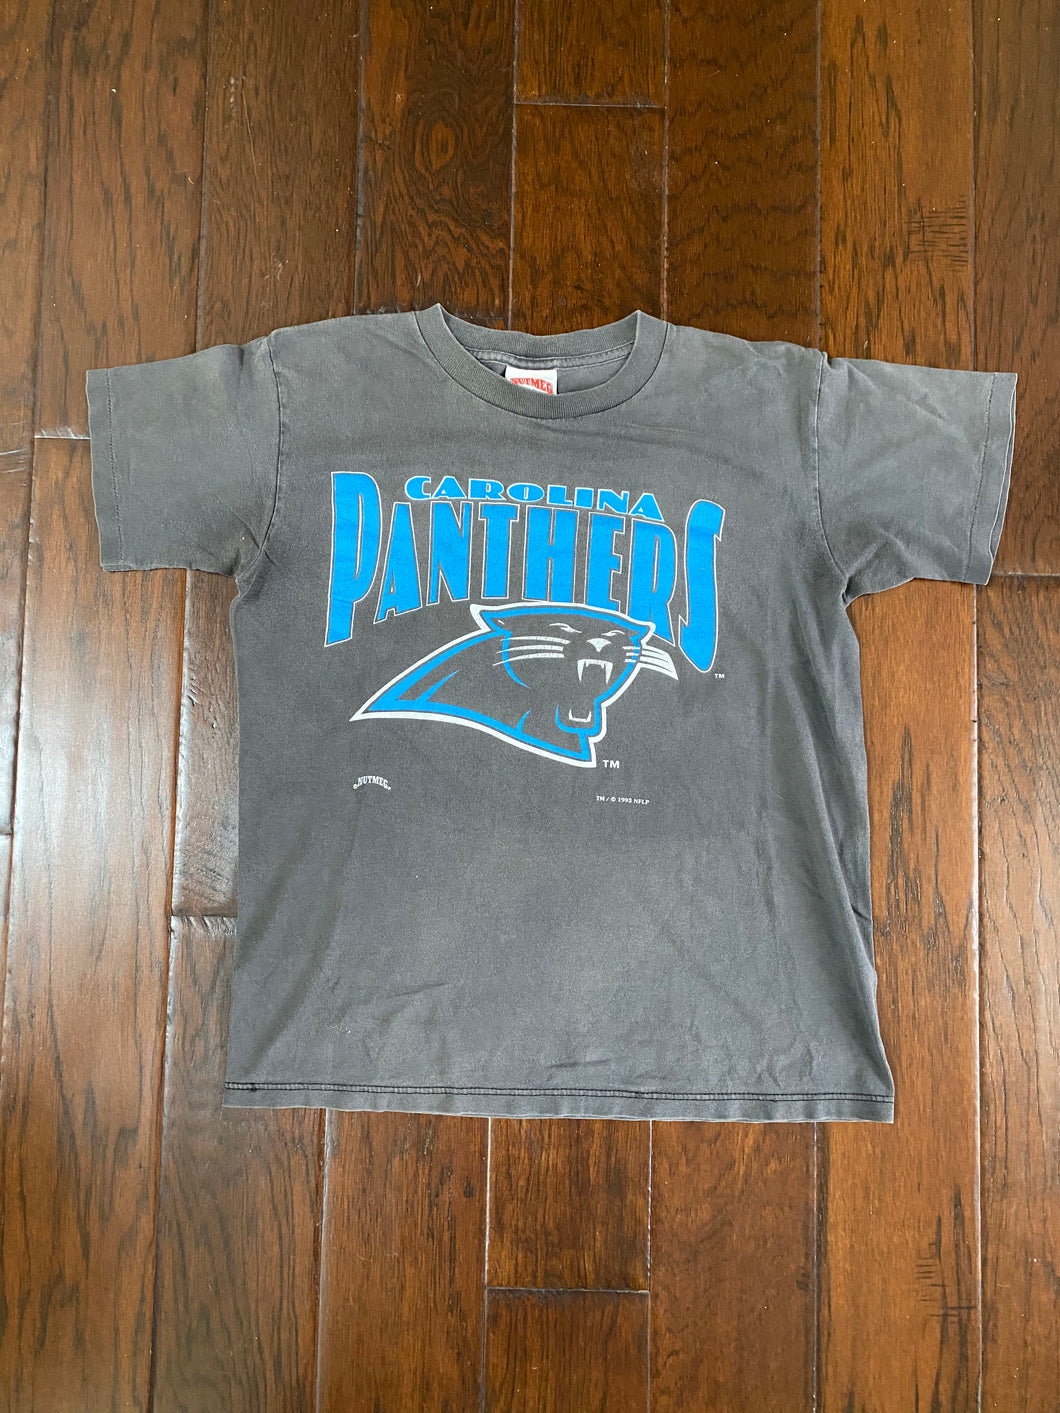 Carolina Panthers 1993 Vintage Distressed T-shirt